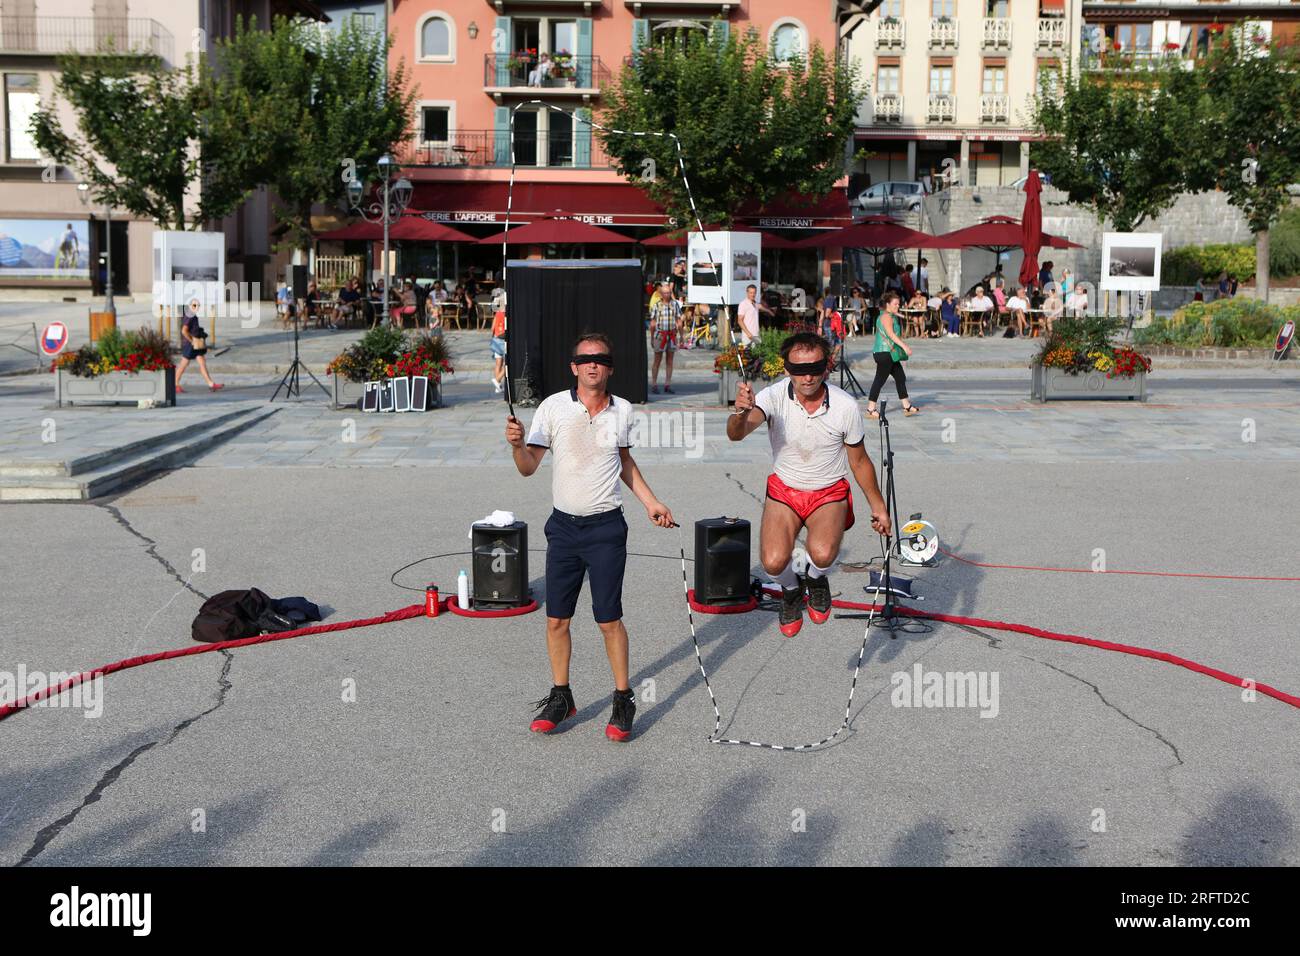 Maint’now : duo de corde à sauter burlesque. Esplanade du Mont-Blanc. Alpi Hours. Saint-Gervais-les-Bains. Haute-Savoie. Auvergne-Rhône-Alpes. France. Stock Photo